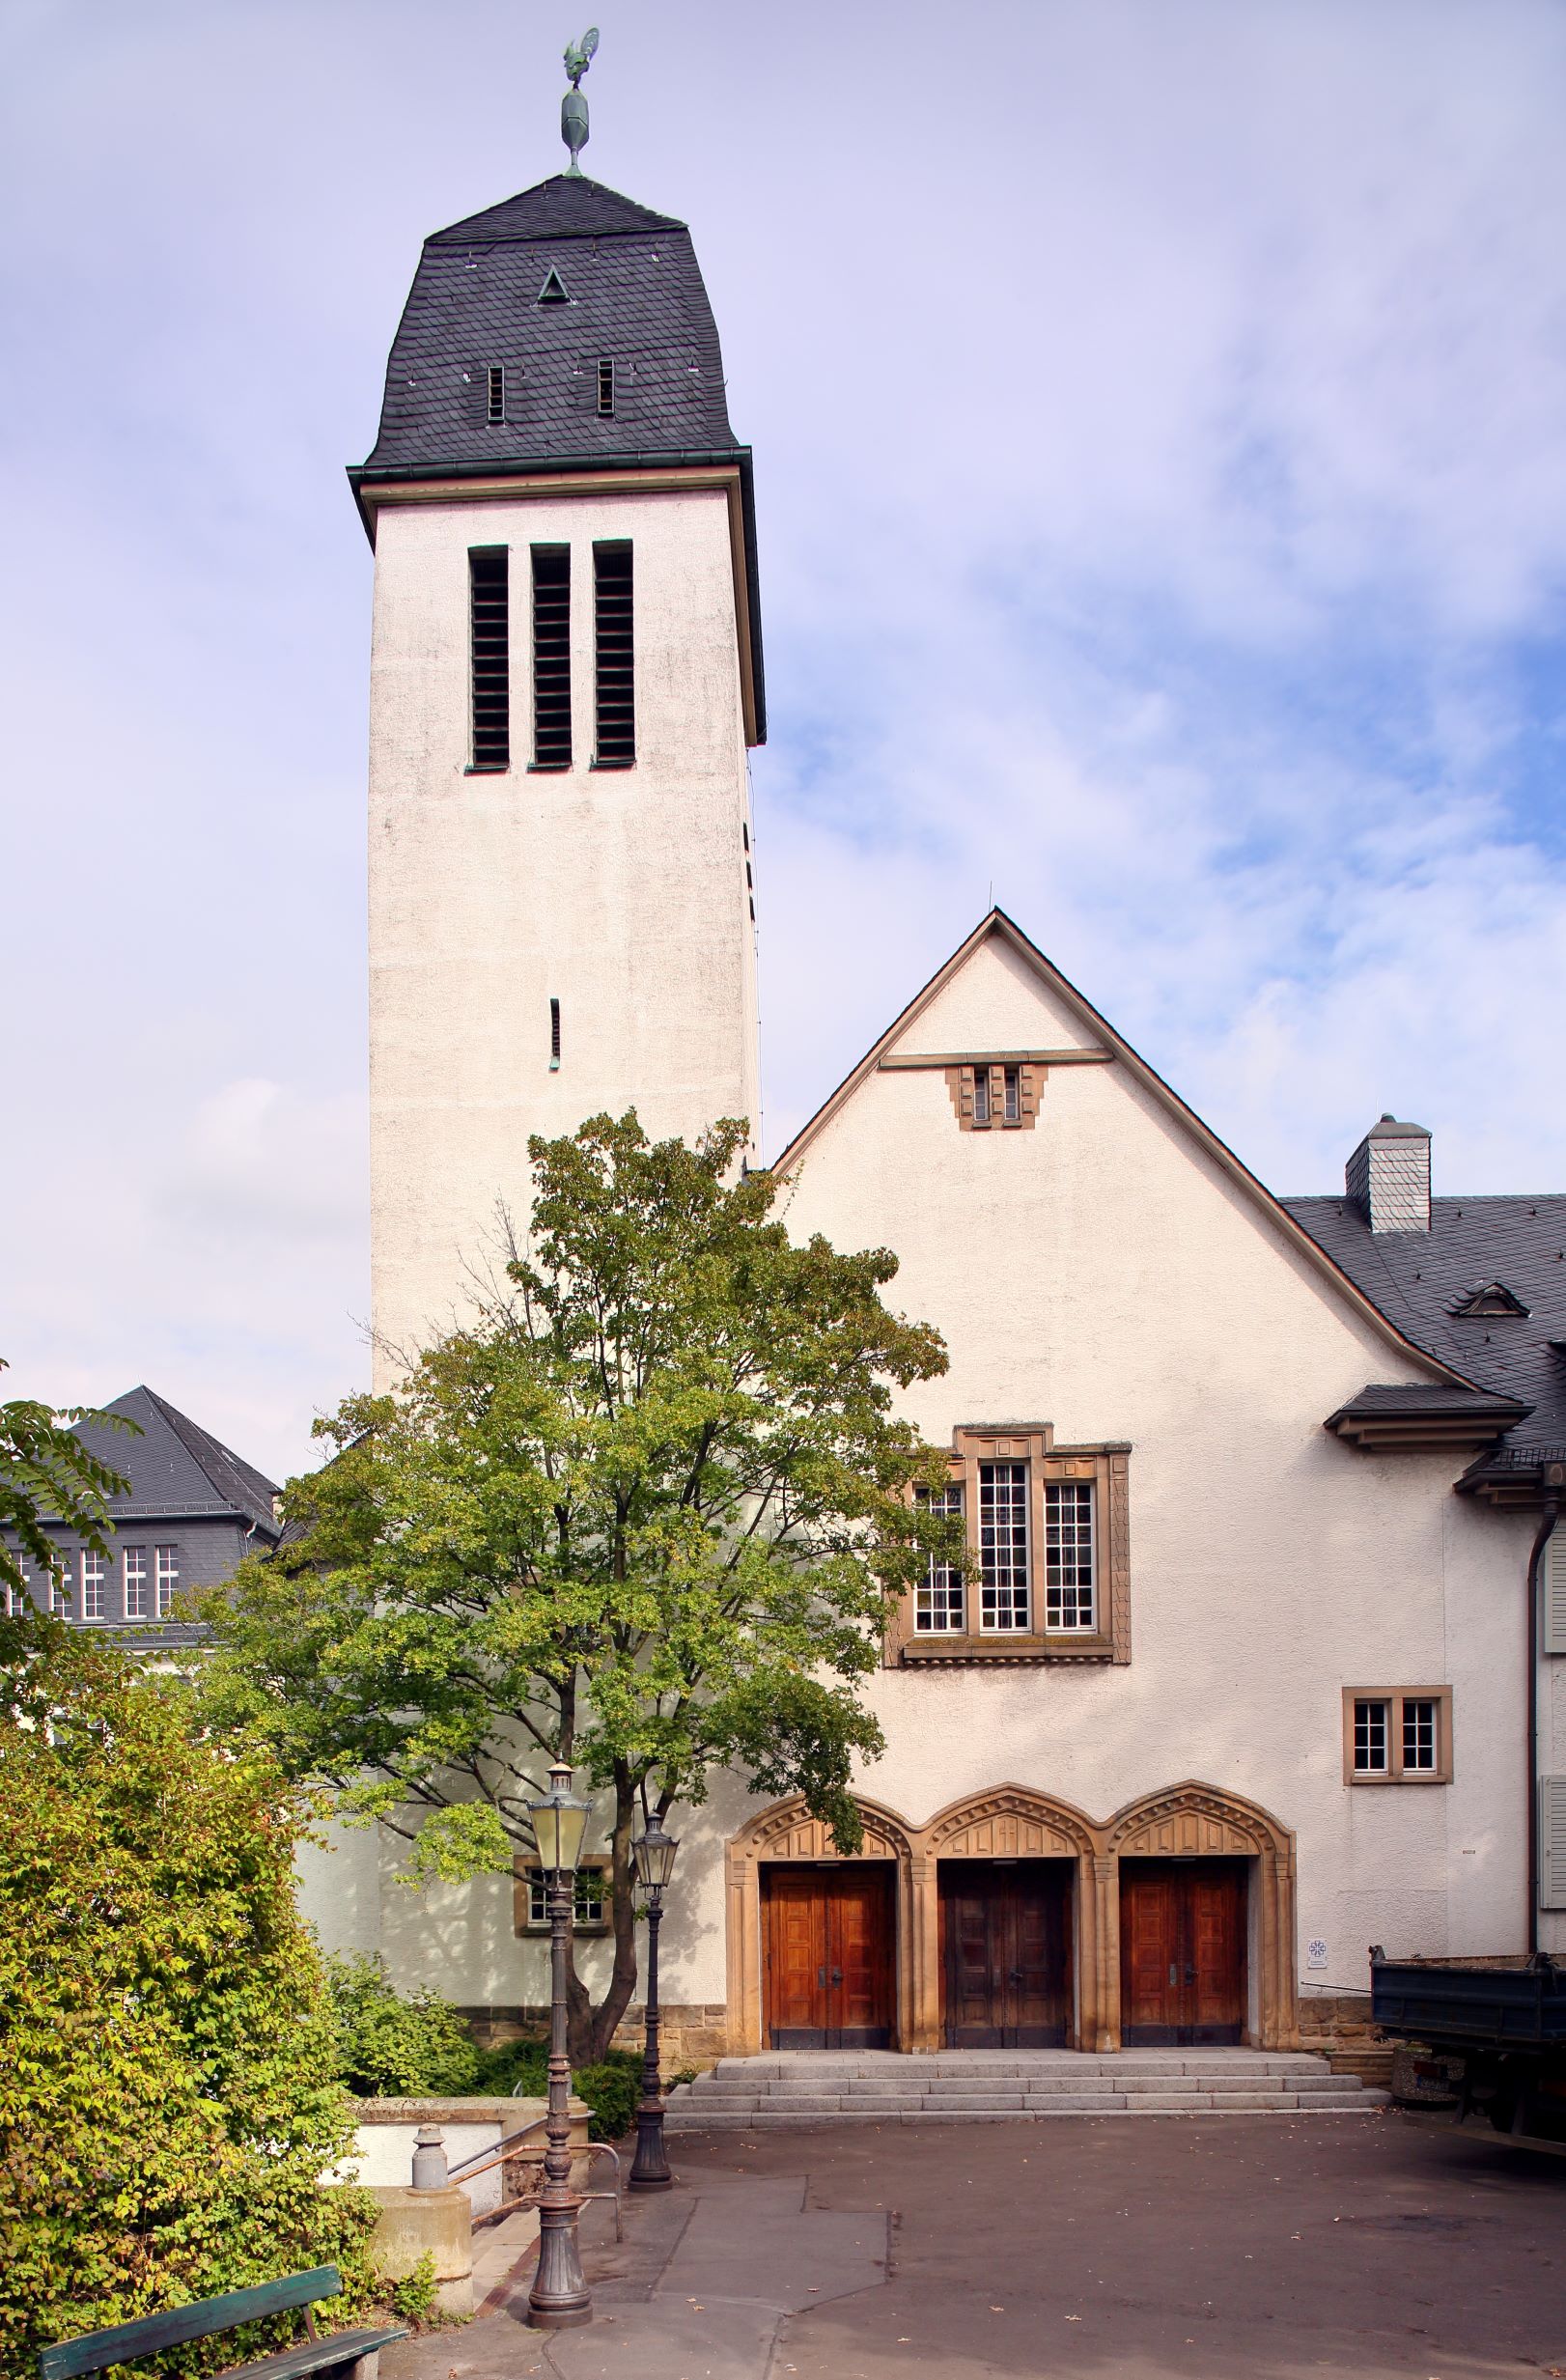 Evangelische Kirche Mainz-Mombach, Pestalozziplatz 2-4 in Mainz